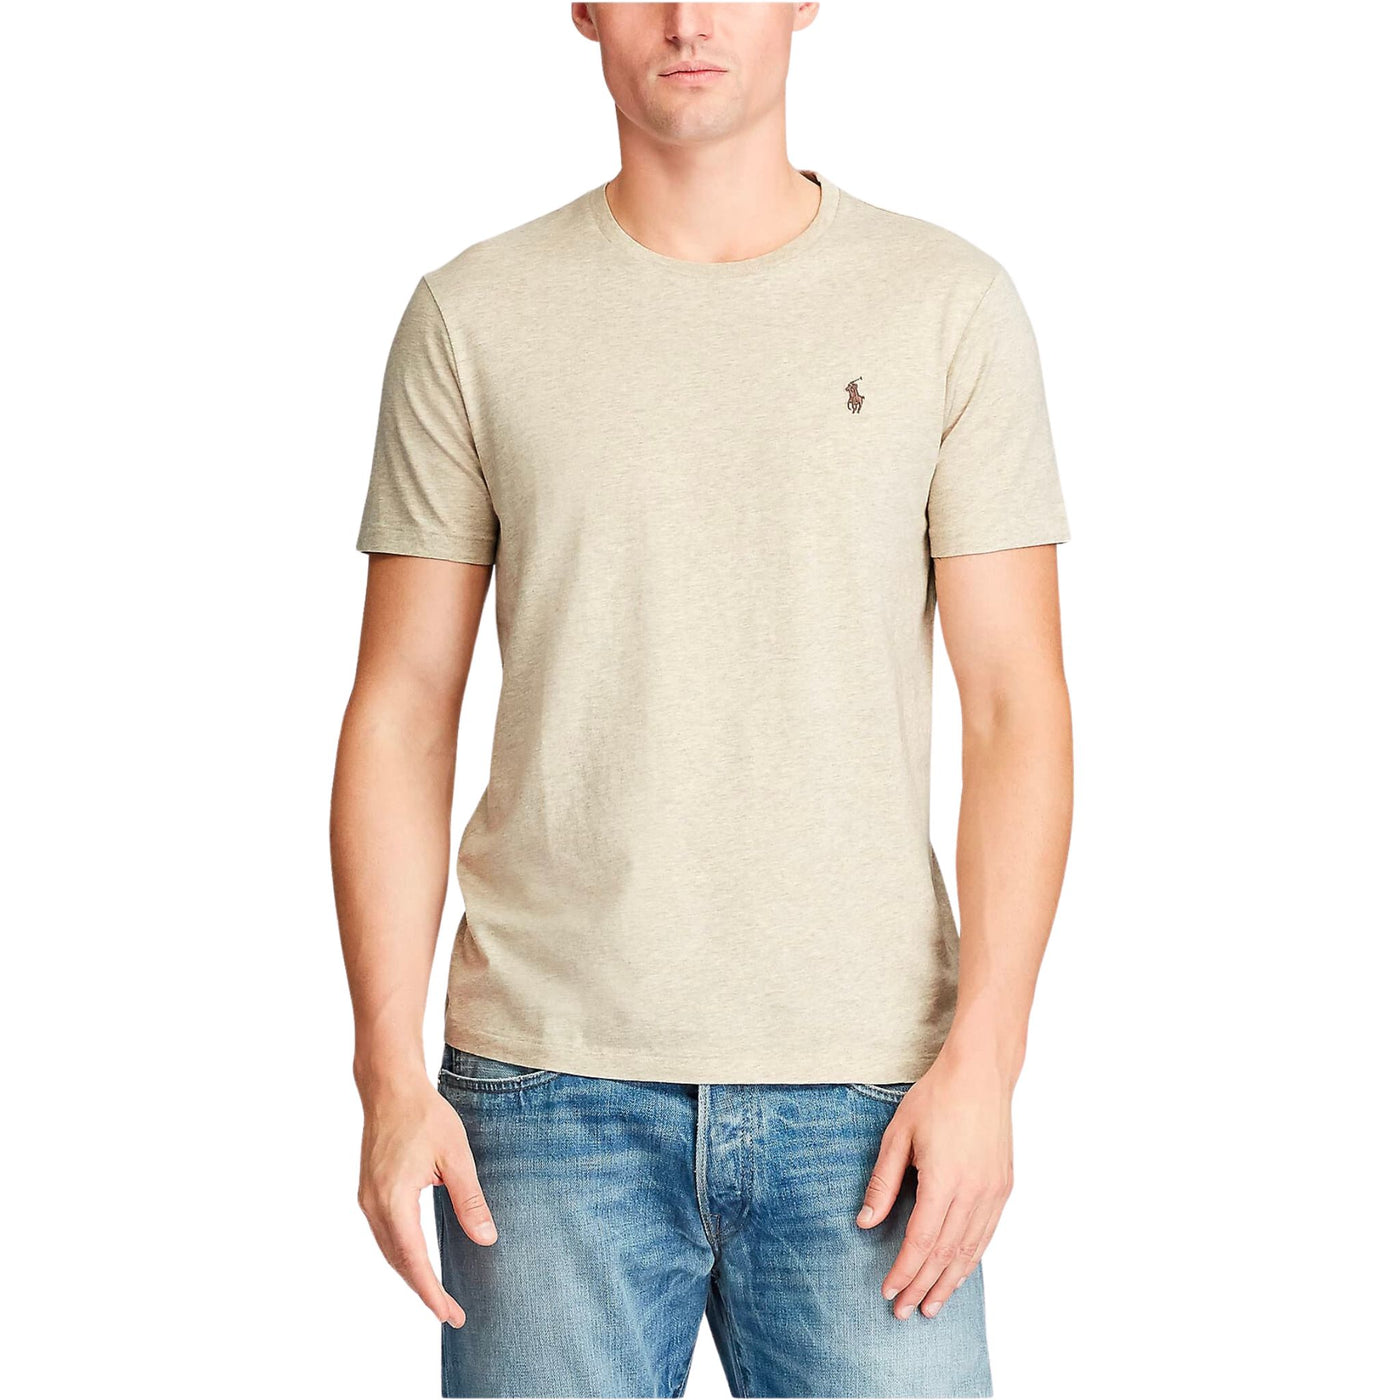 T-shirt a maniche corte Beige, Polo Ralph Lauren, indossata